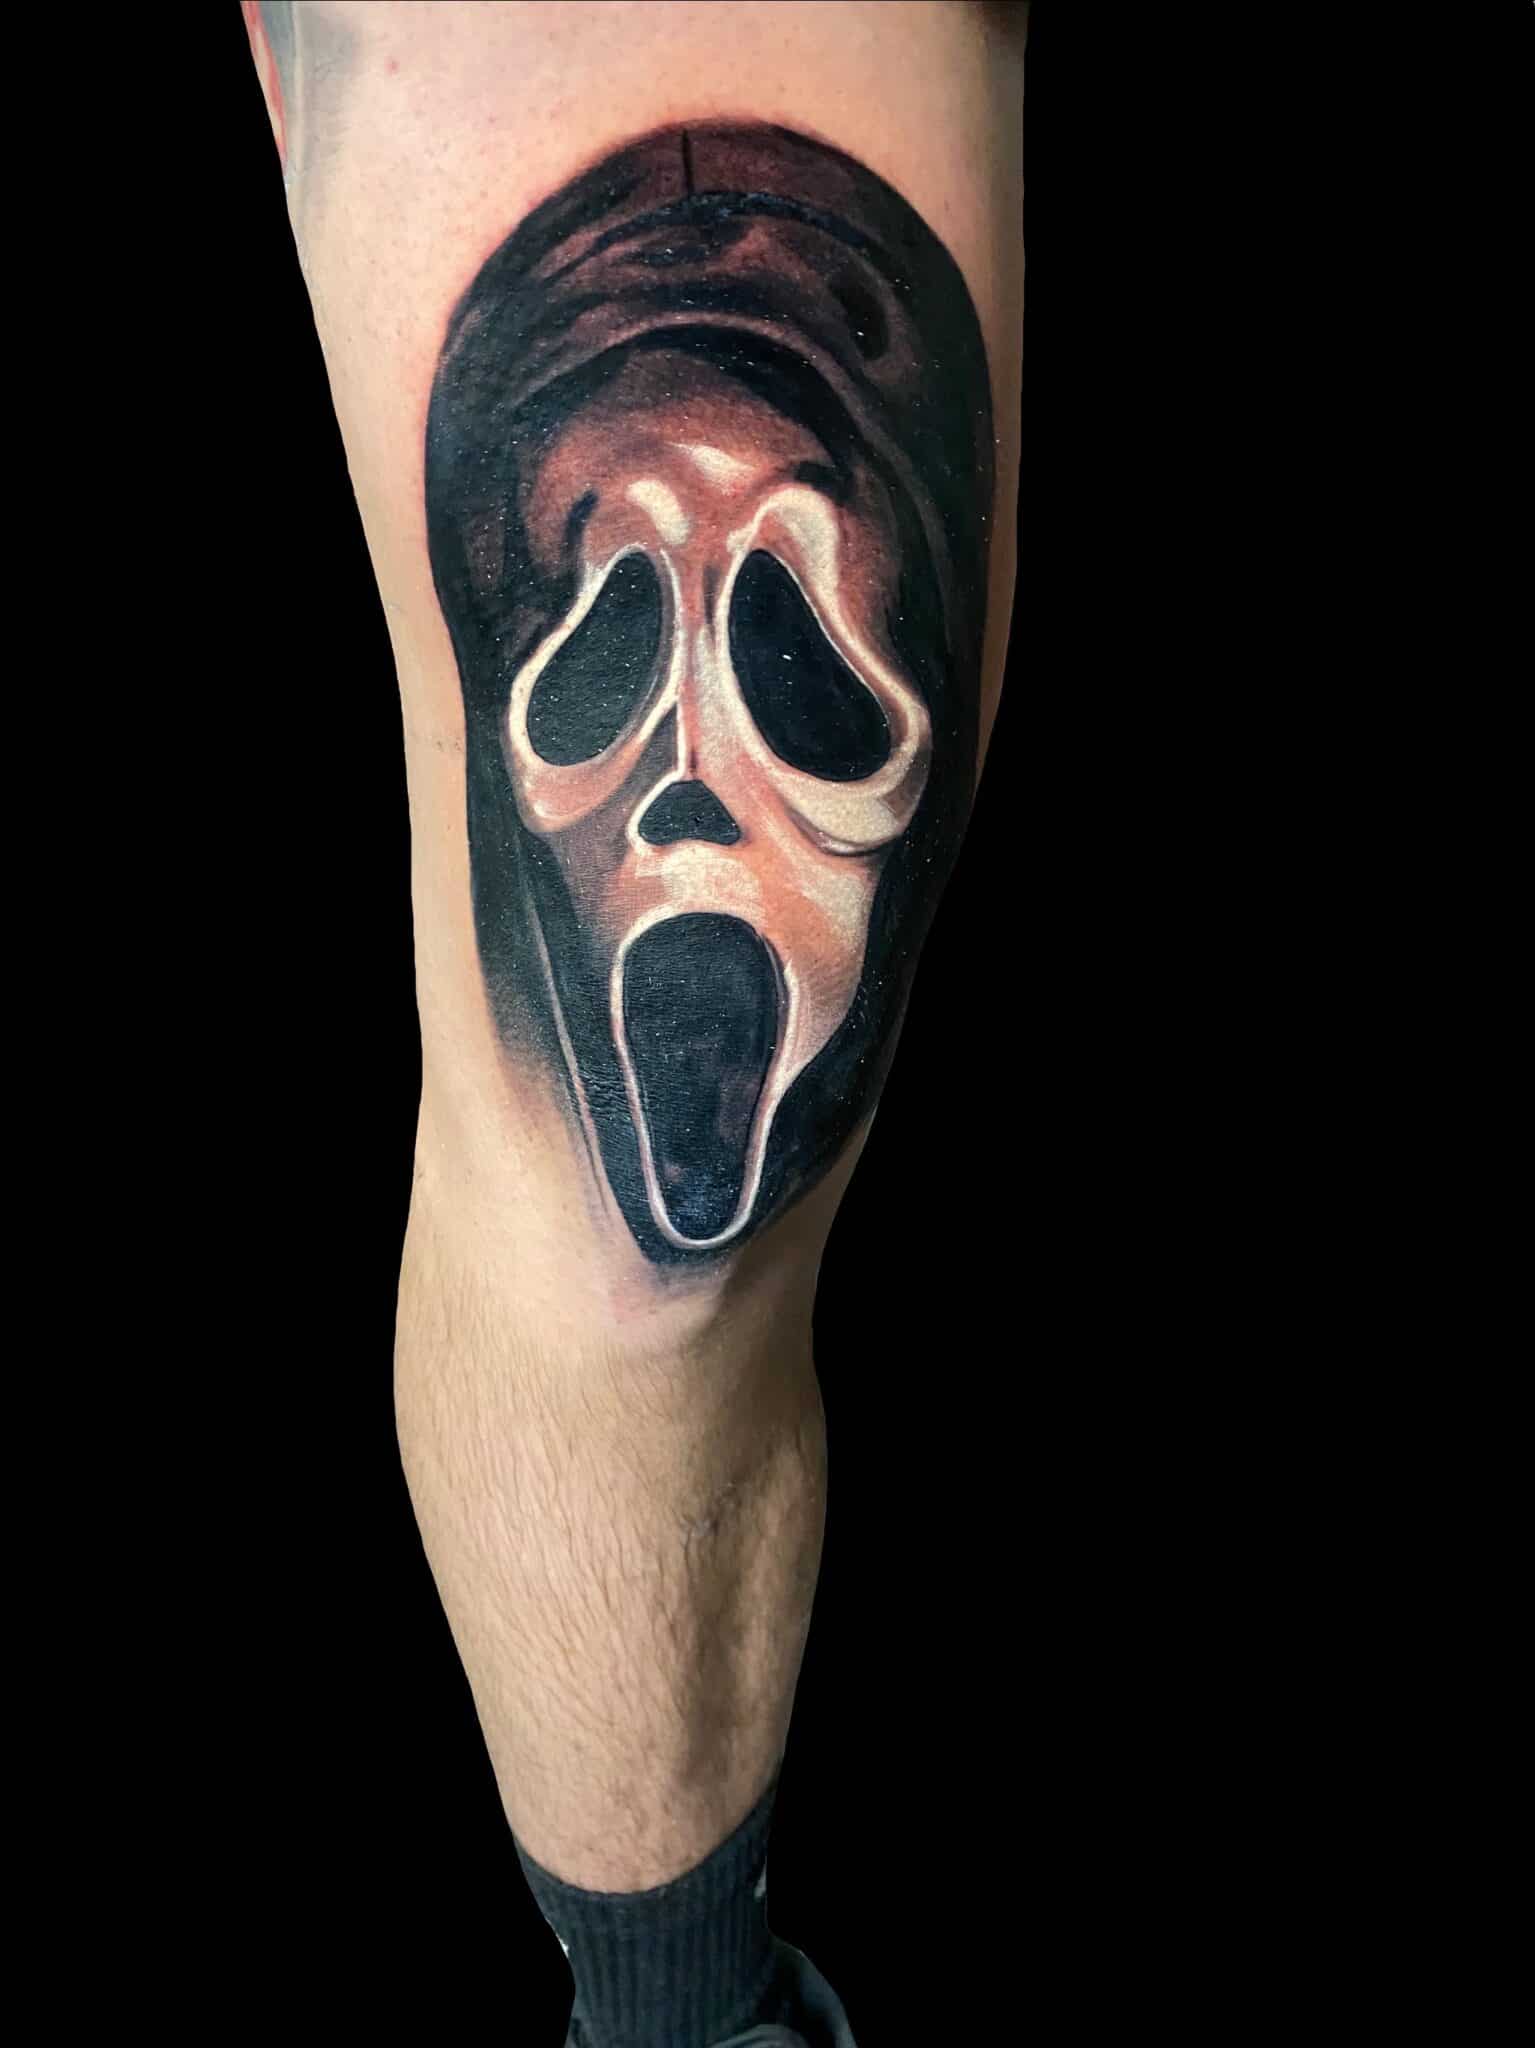 Tattoo by Chris Beck, artist at Revolt Tattoos